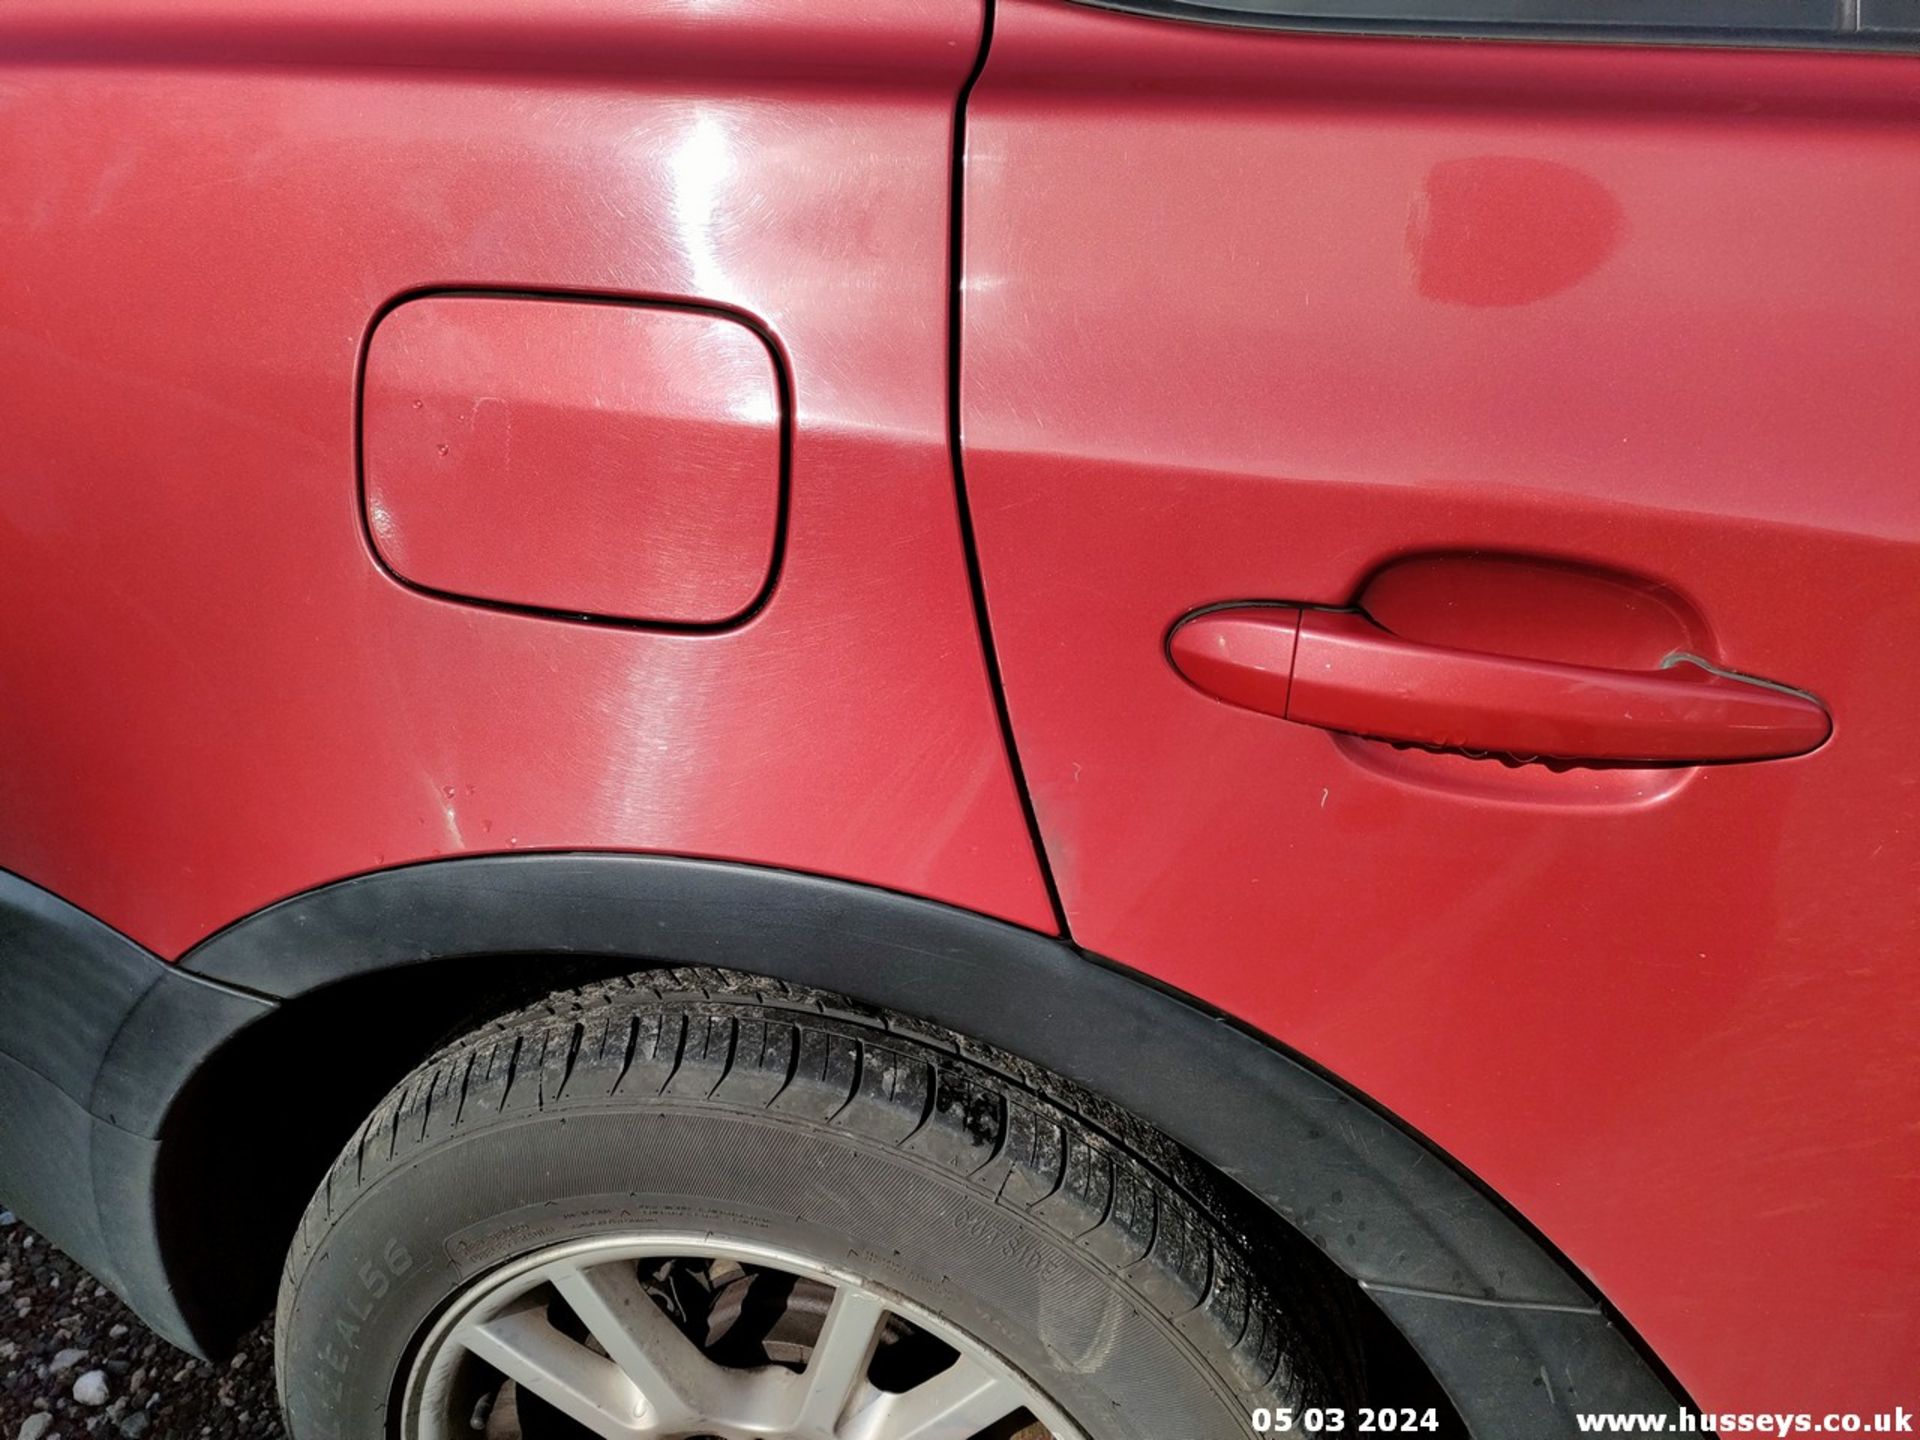 05/55 BMW X3 D SE - 1995cc 5dr Estate (Red, 188k) - Image 41 of 51